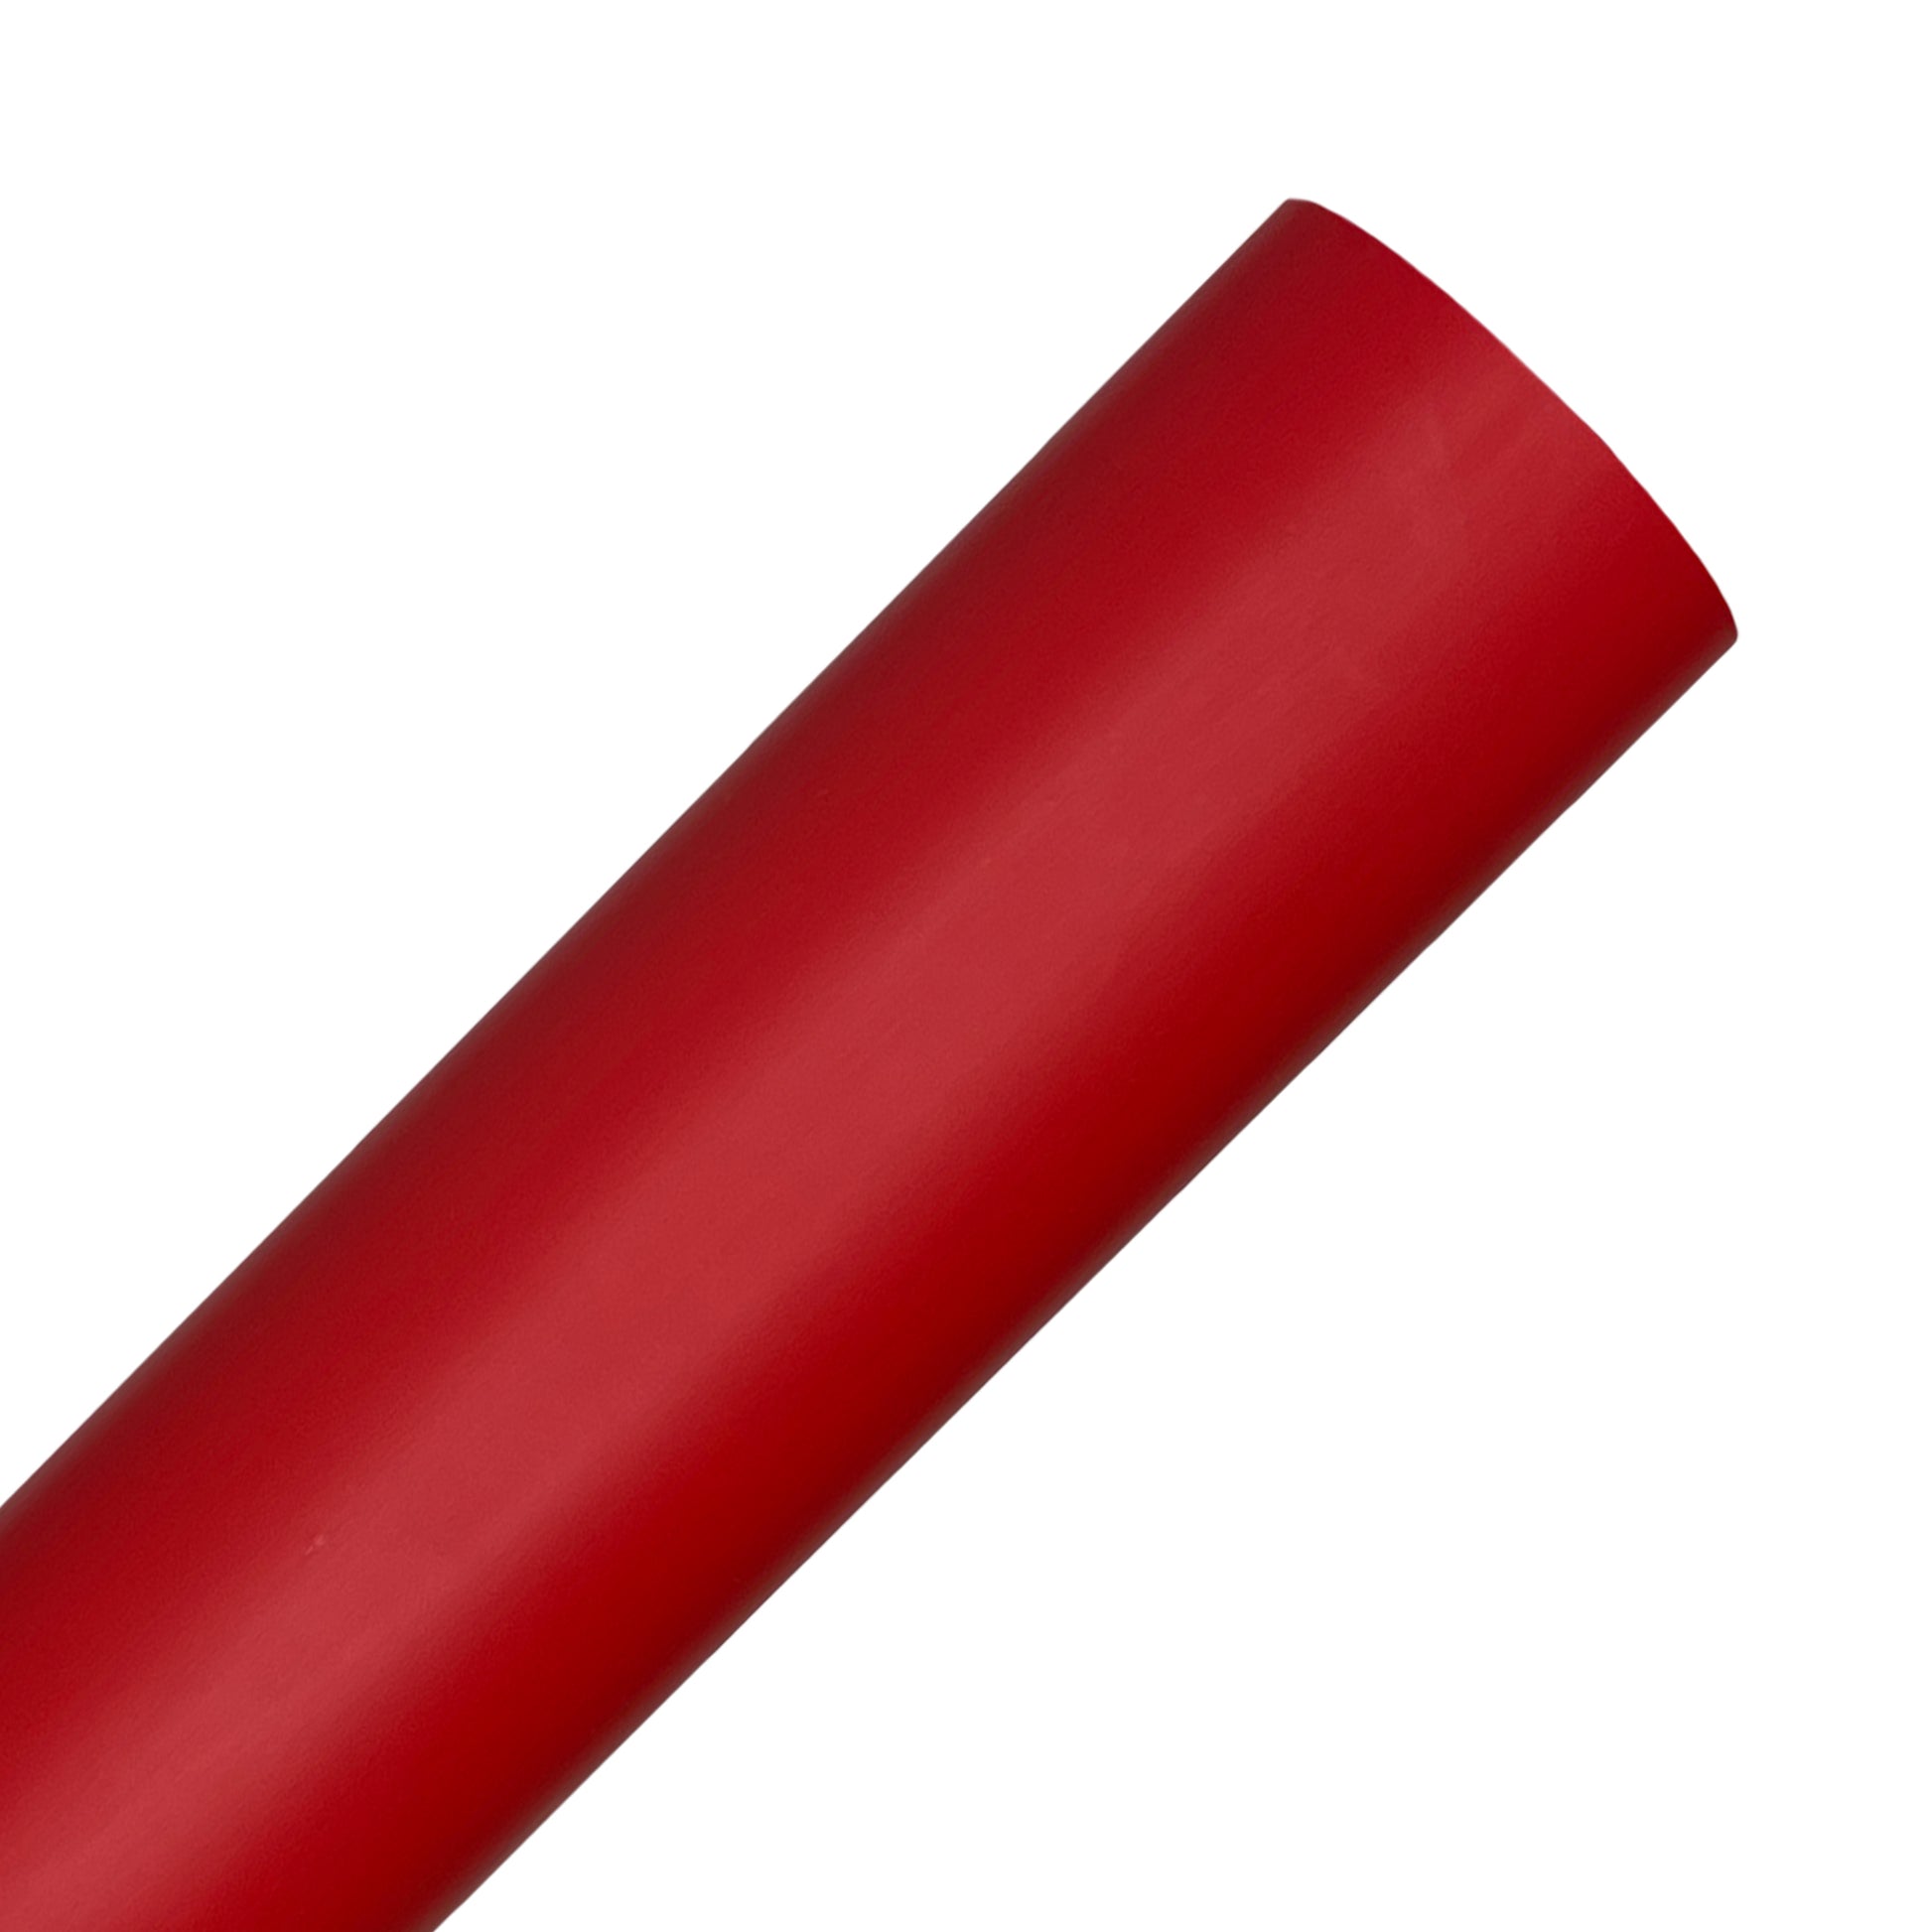 Red Heat Transfer Vinyl Rolls By Craftables – shopcraftables